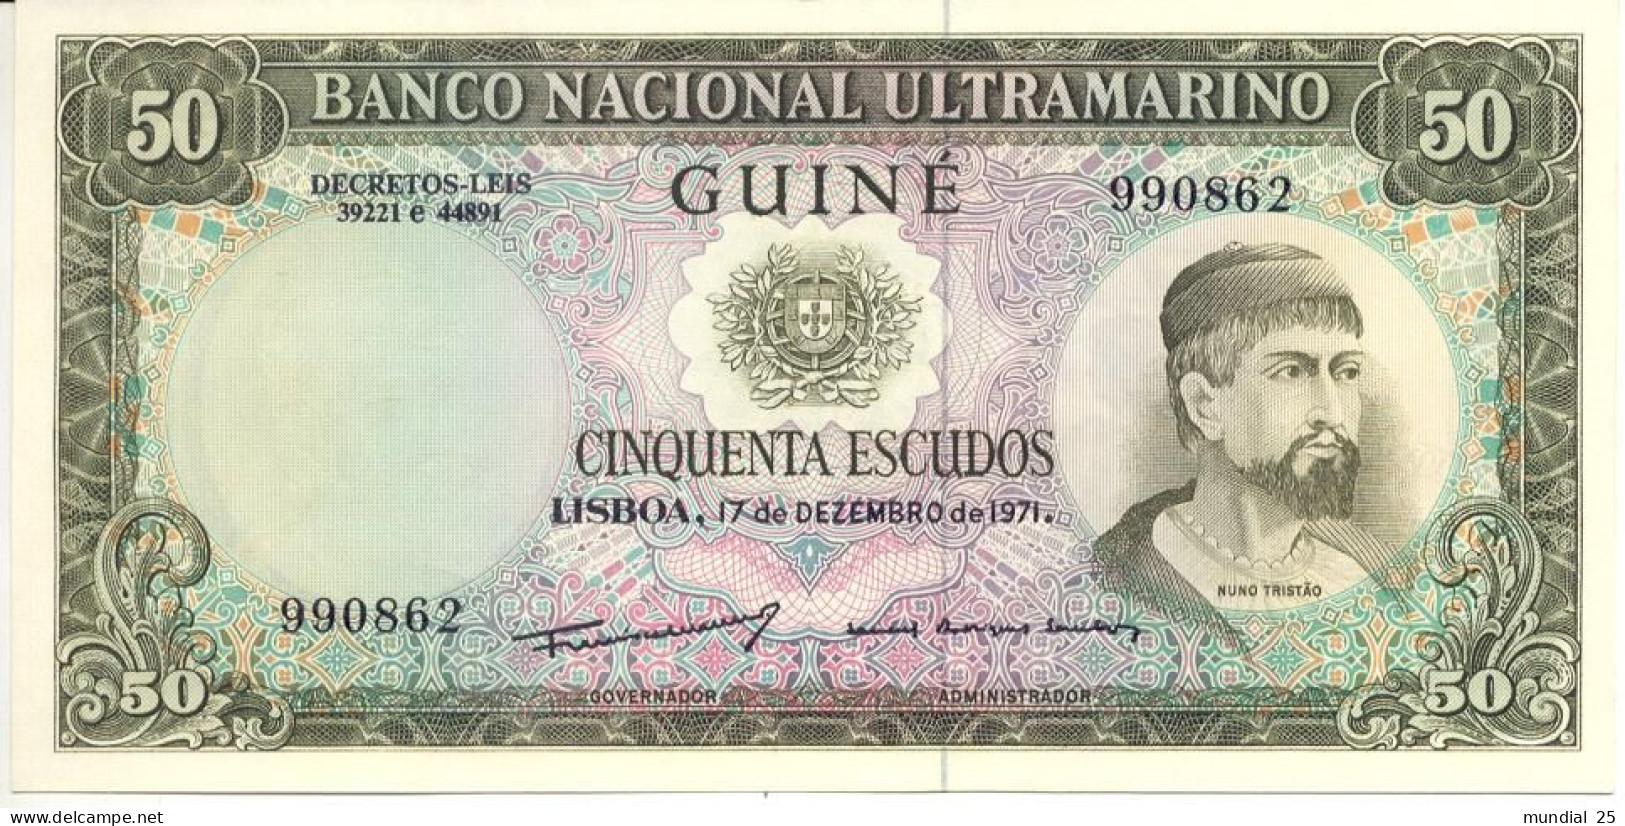 GUINEA-BISSAU PORTUGAL 50$00 ESCUDOS 17/12/1971 - Guinea-Bissau